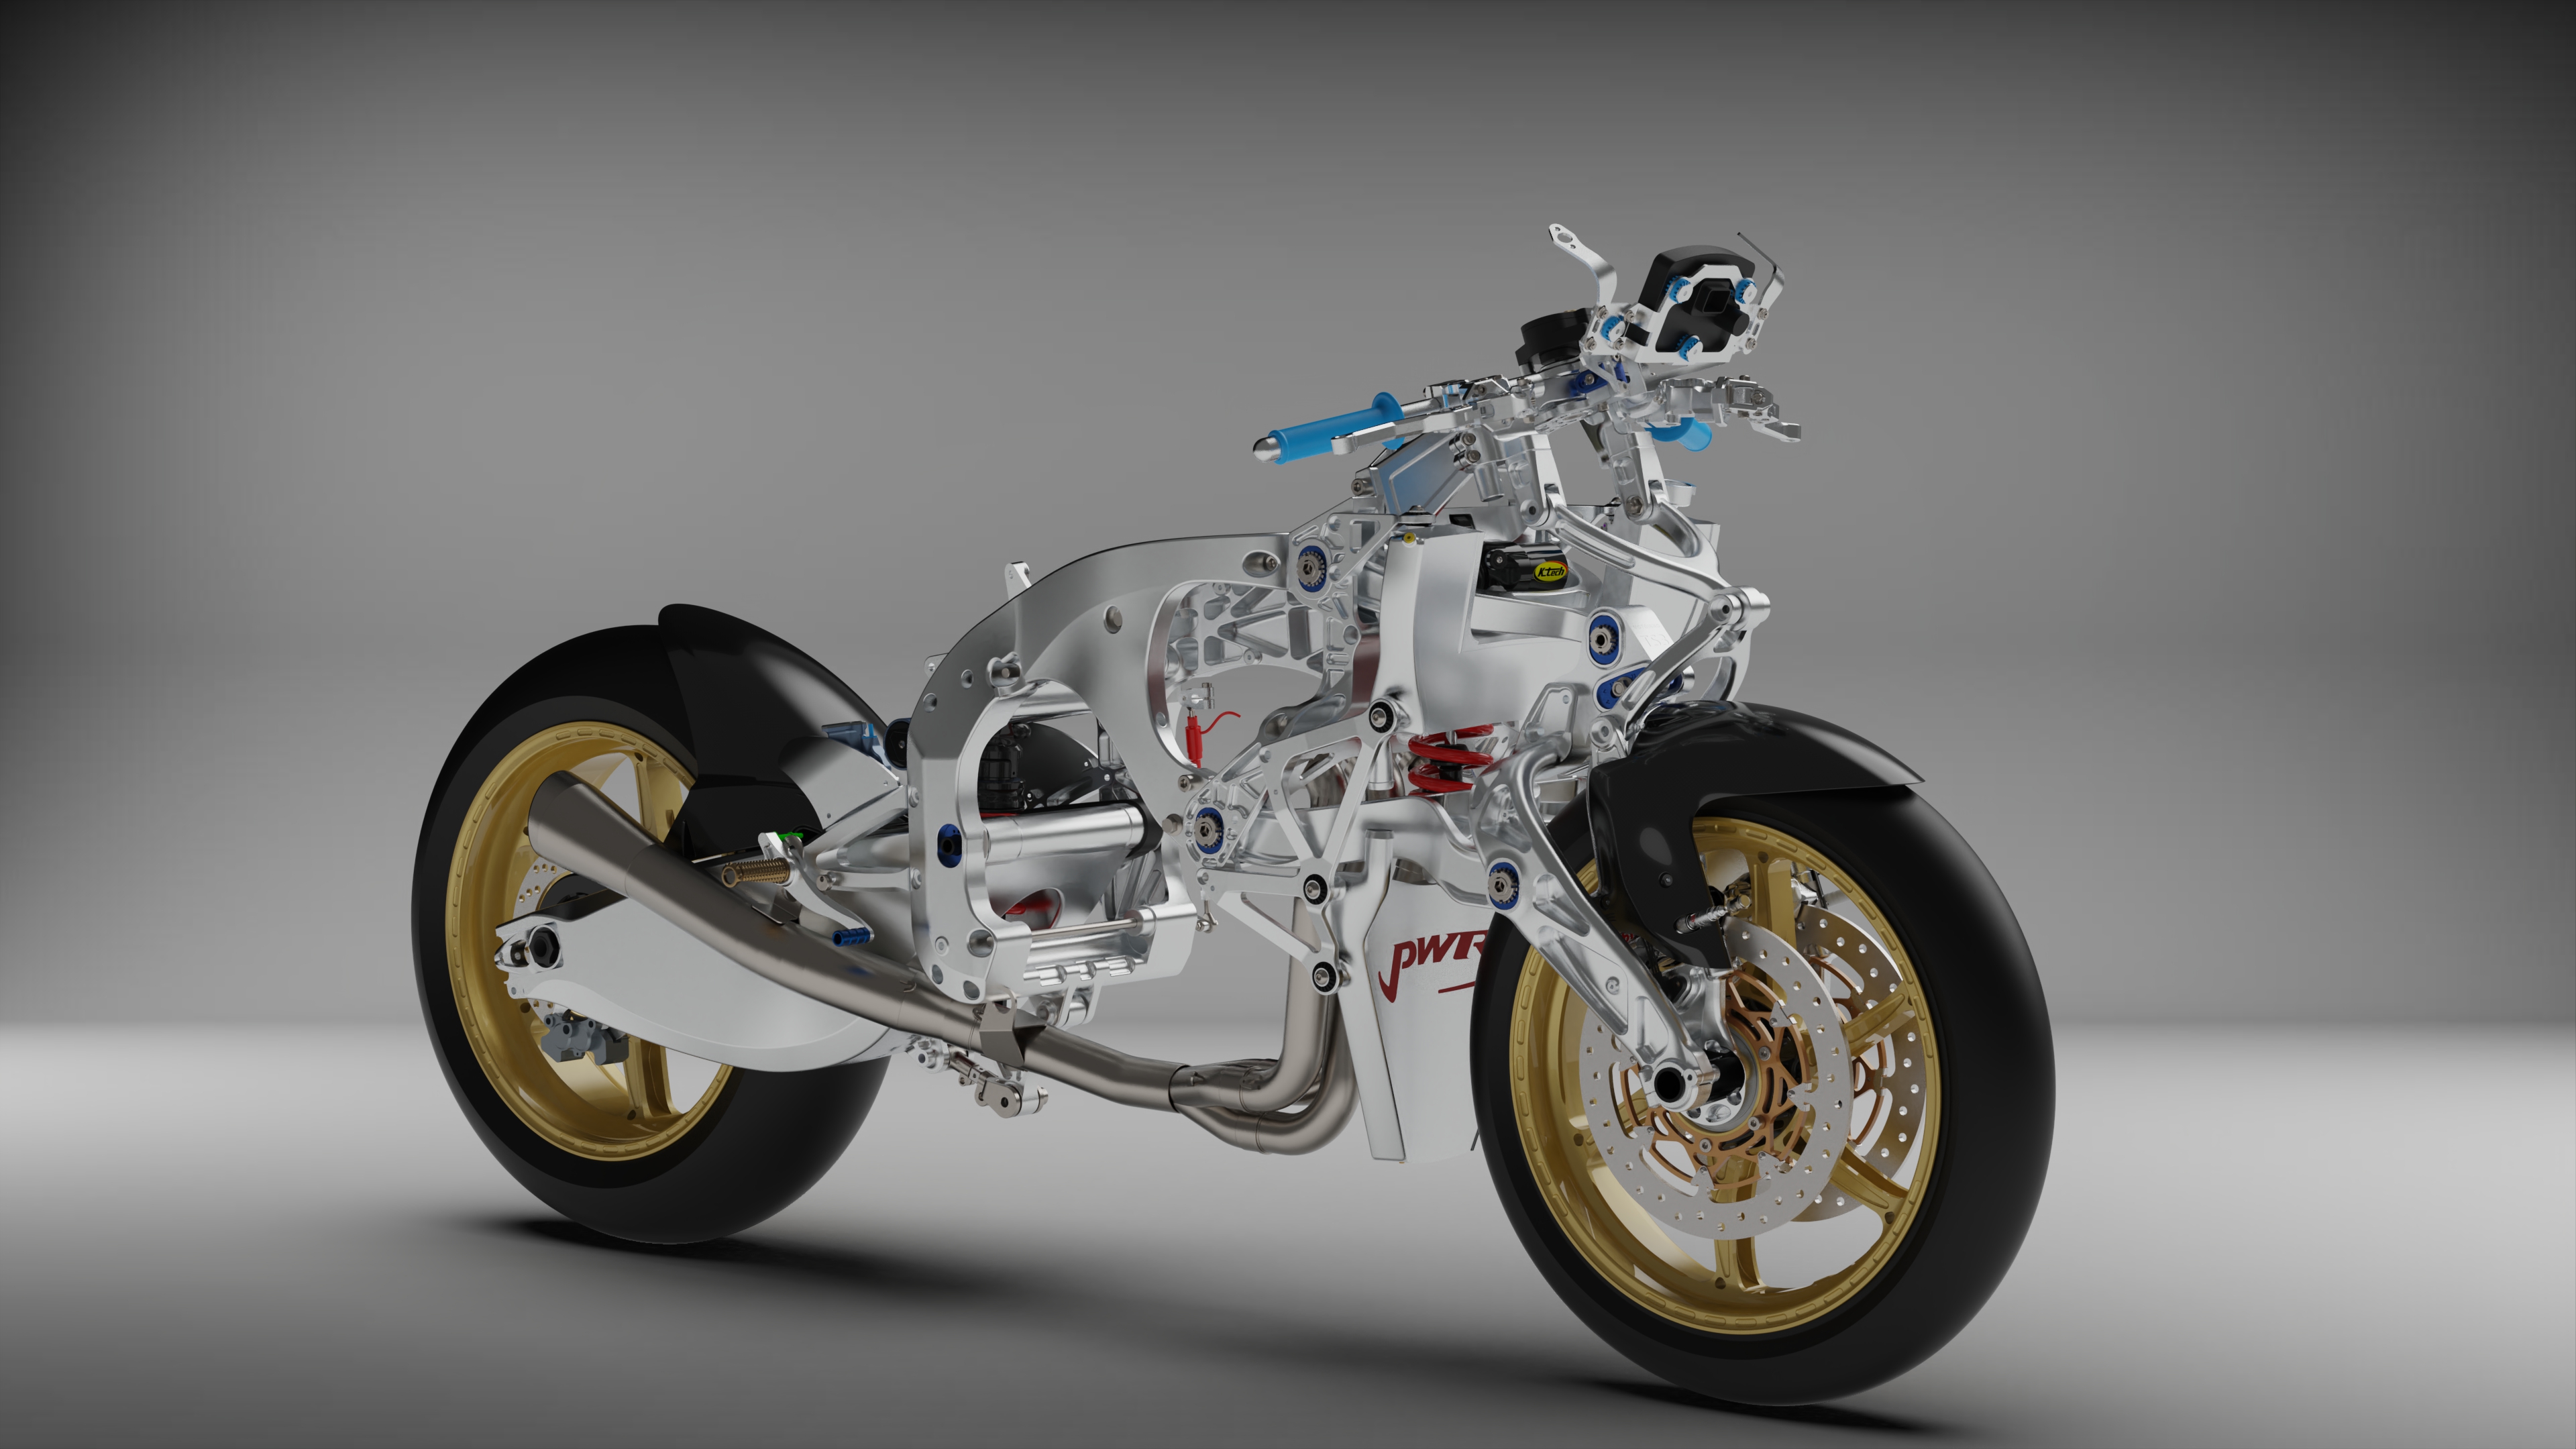 MOTOINNI Motorcycle Innovation